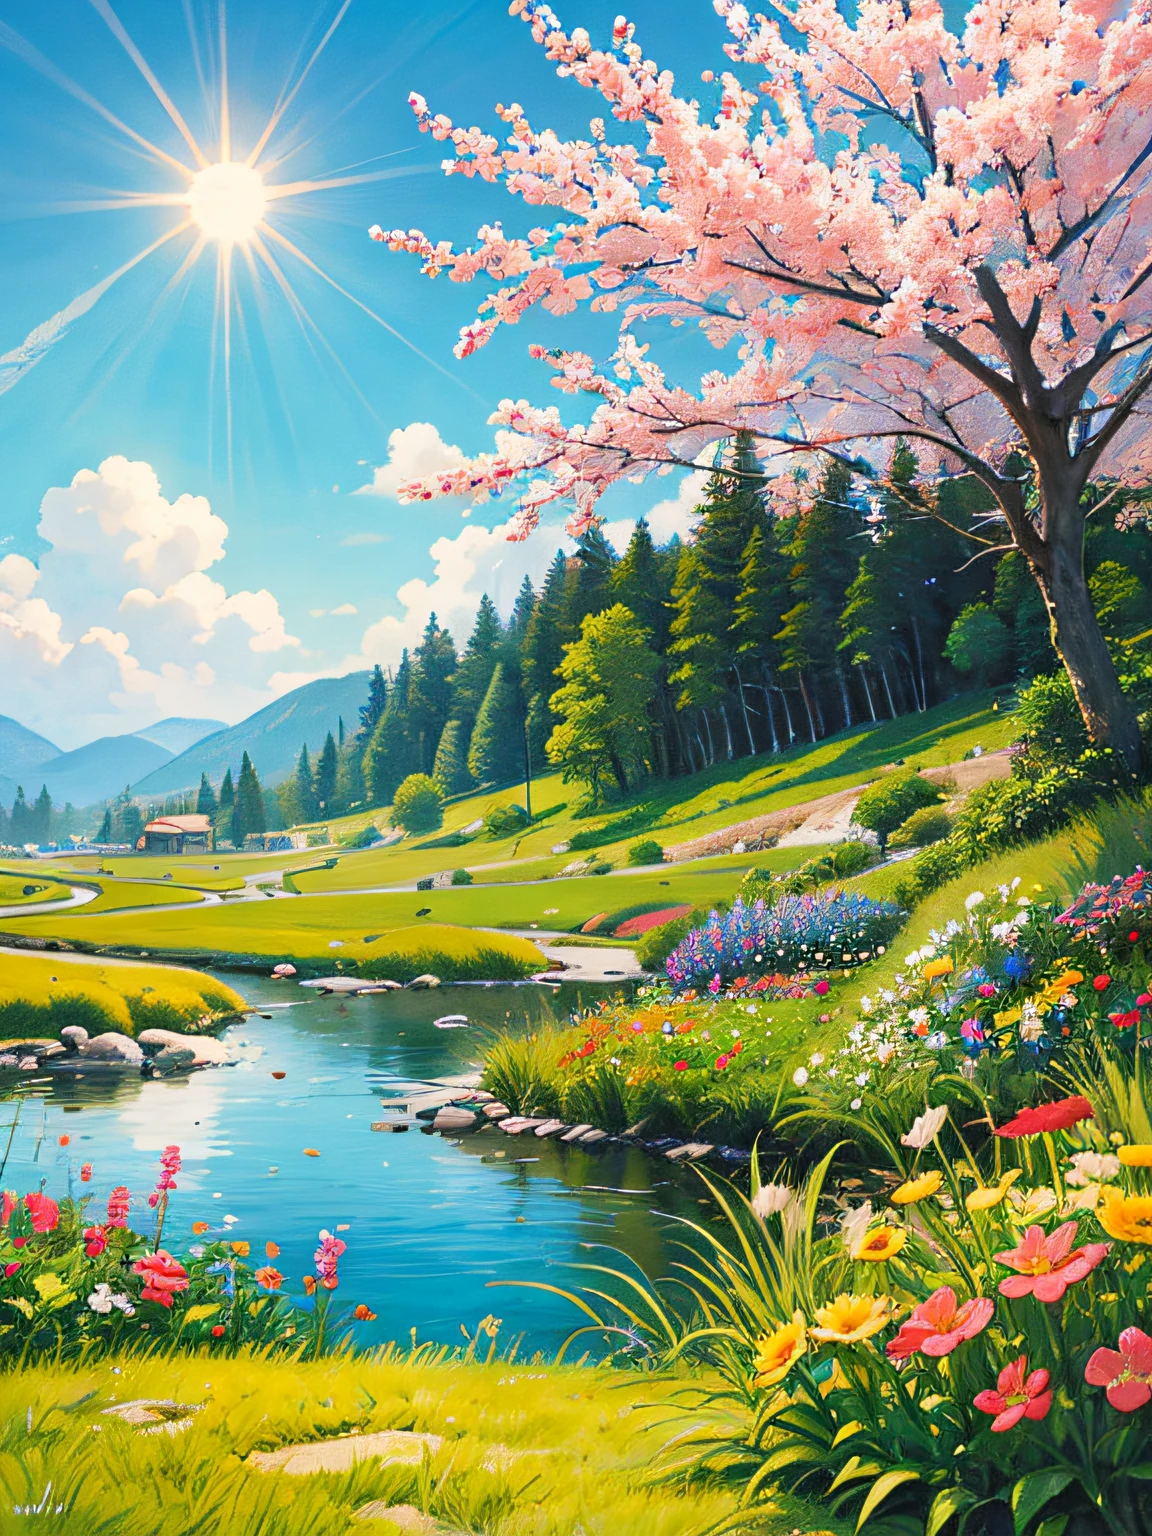 frente a frente，tira cómica，Cuerpo lateral，Sorissos，Esta es una pintura de paisaje de primavera，afuerasflores multicolores，y el sol esta brillando，（Flores coloridas）